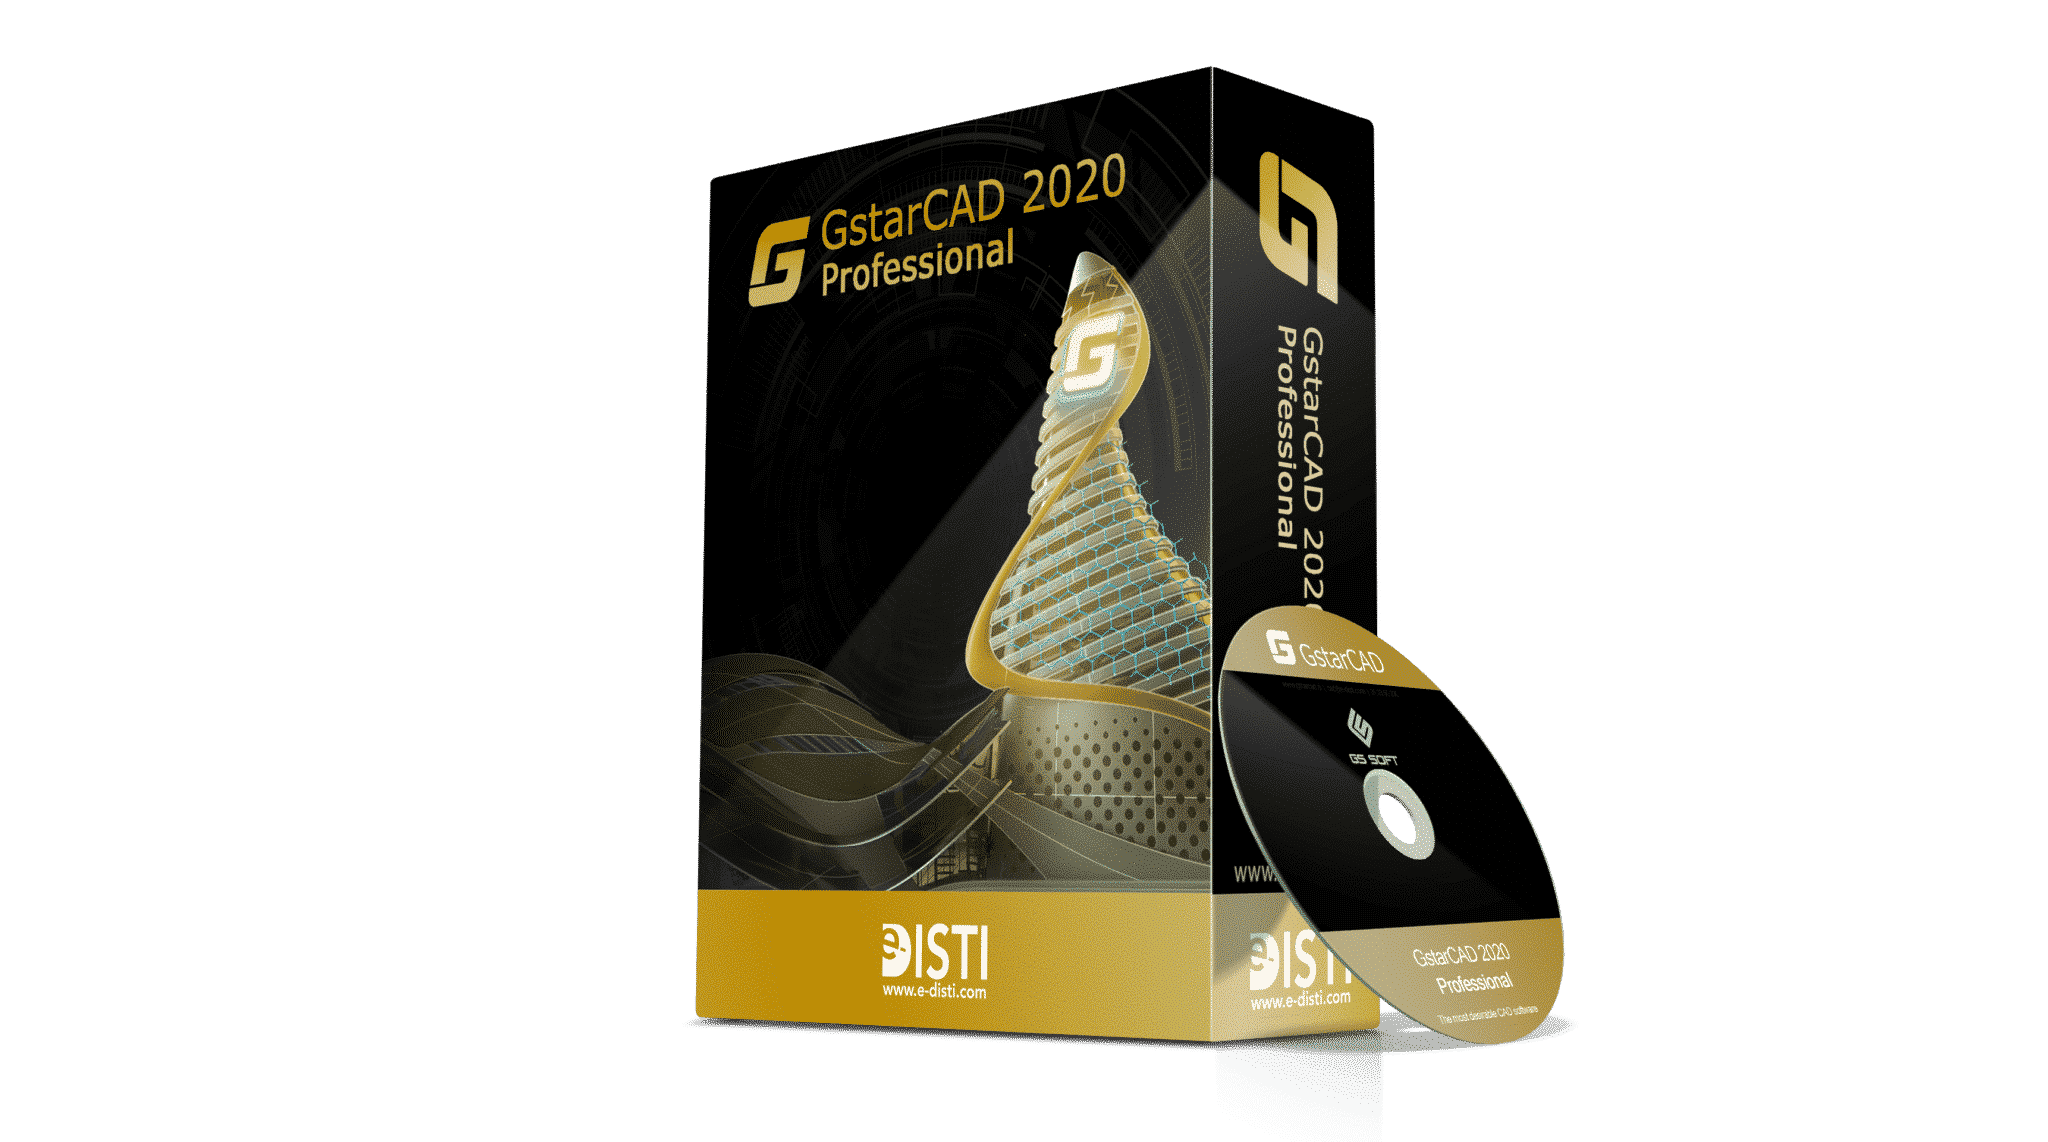 GstarCAD professional CD box E disti